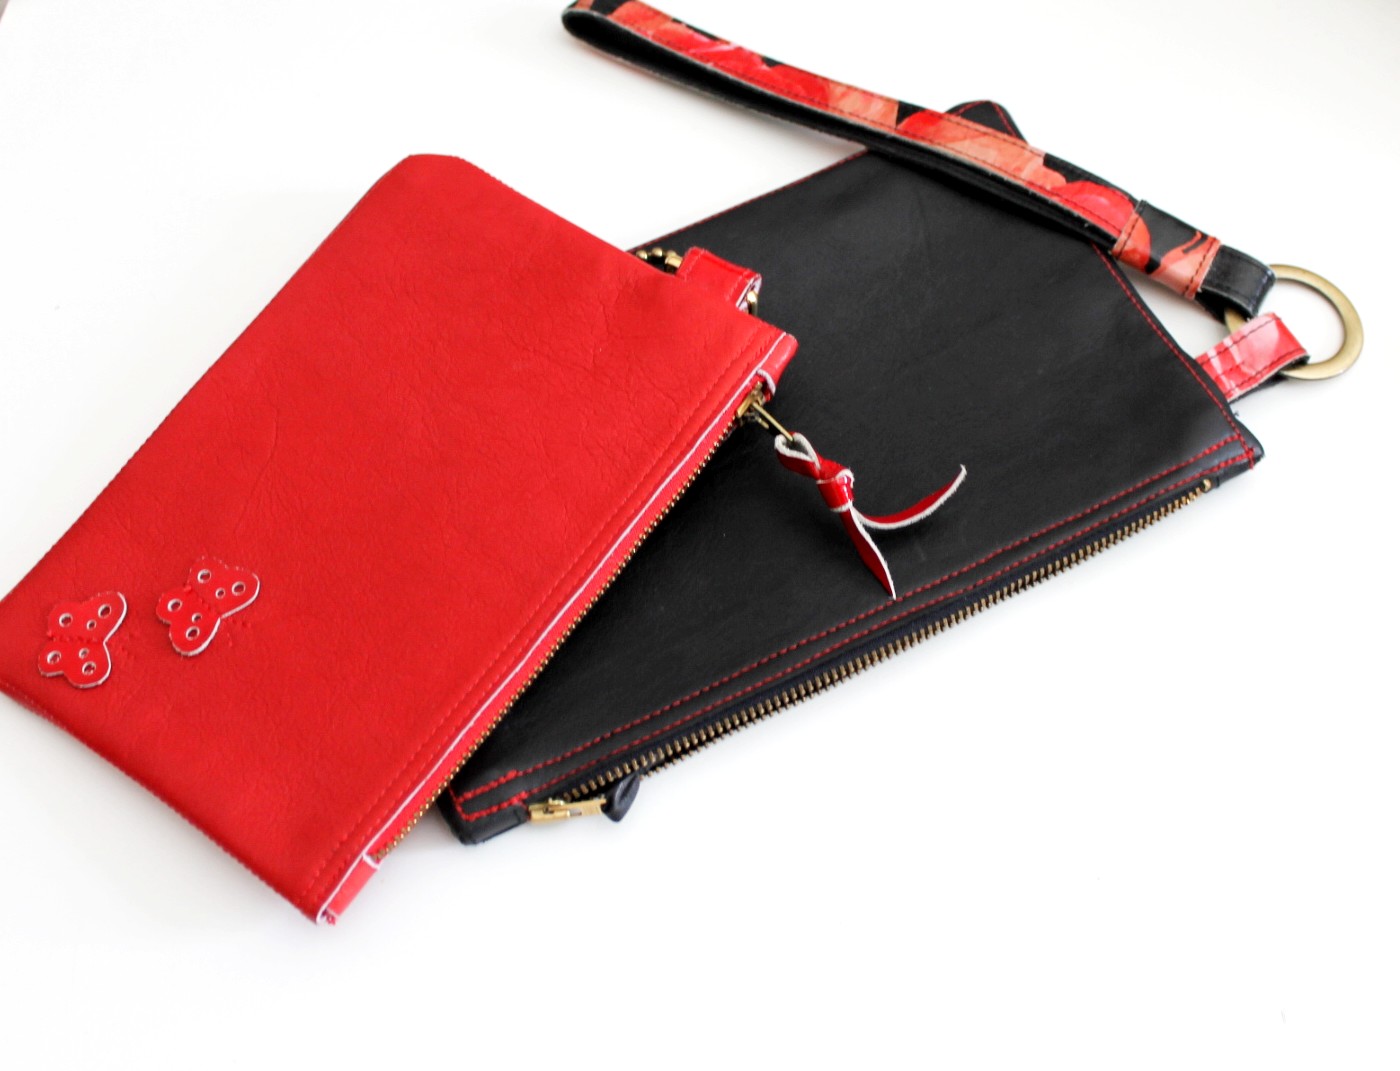 Ulejlighed kantsten have på Sort & rød clutch taske i skind - Nedsat vare - Oprydning